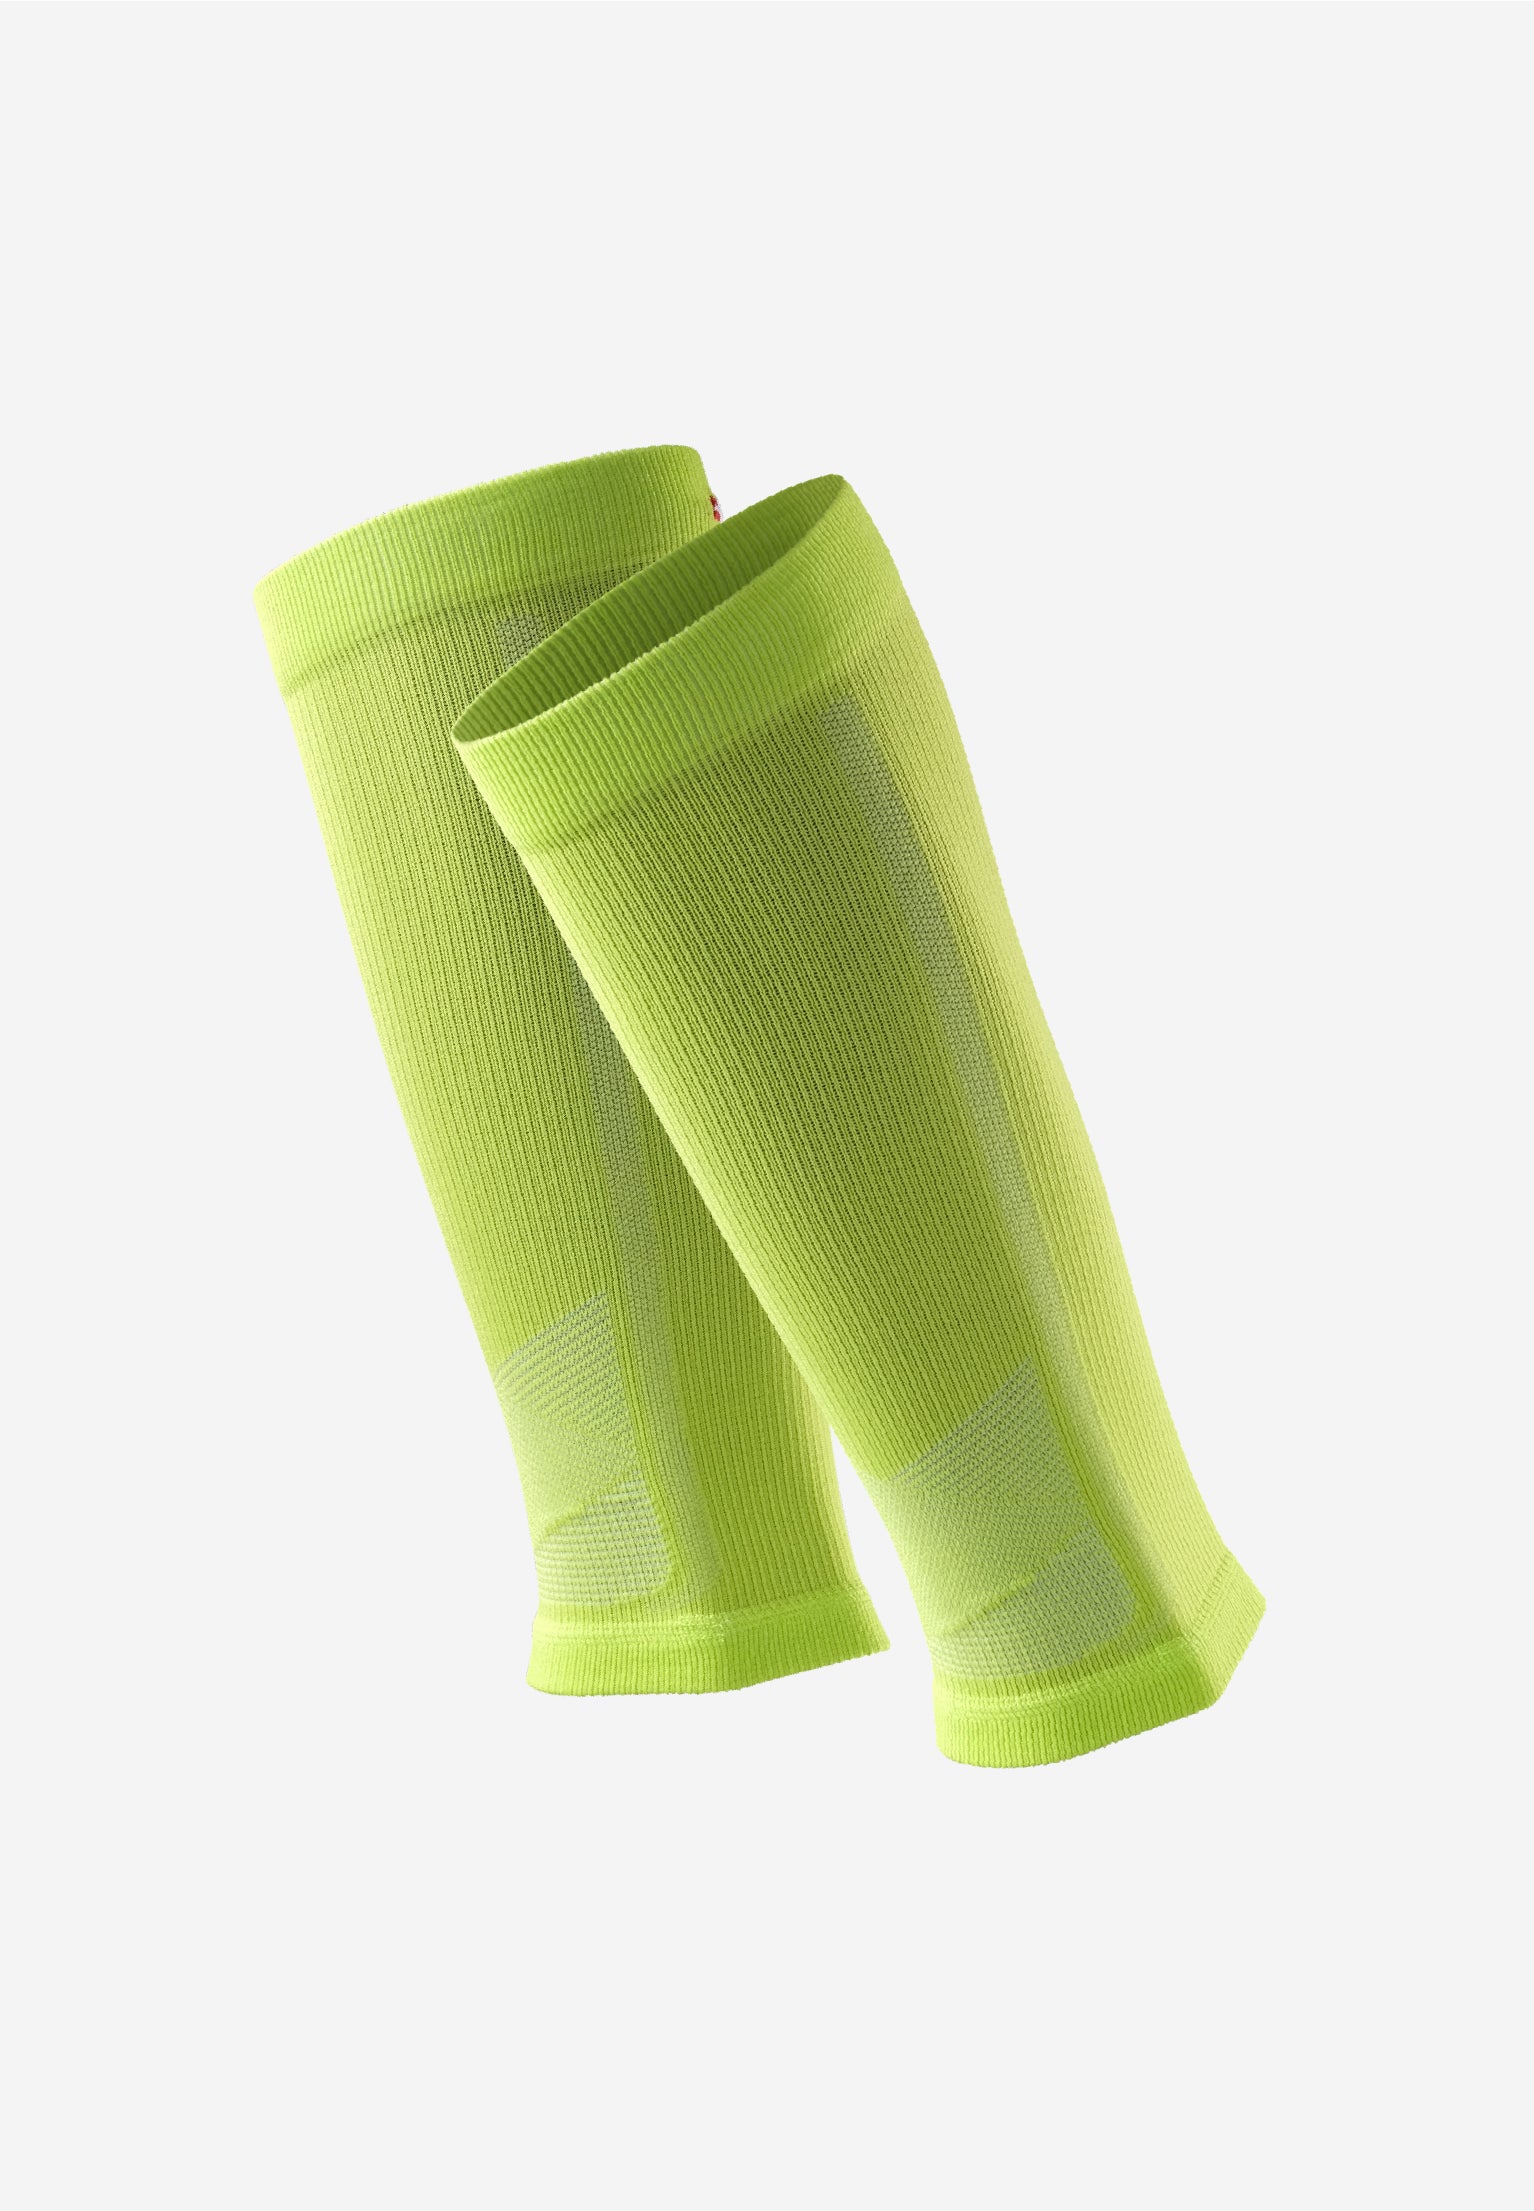 DANISH ENDURANCE Calcetines para correr de larga distancia, absorben la  humedad, acolchados y antiampollas, para hombres y mujeres, paquete de 3  pares